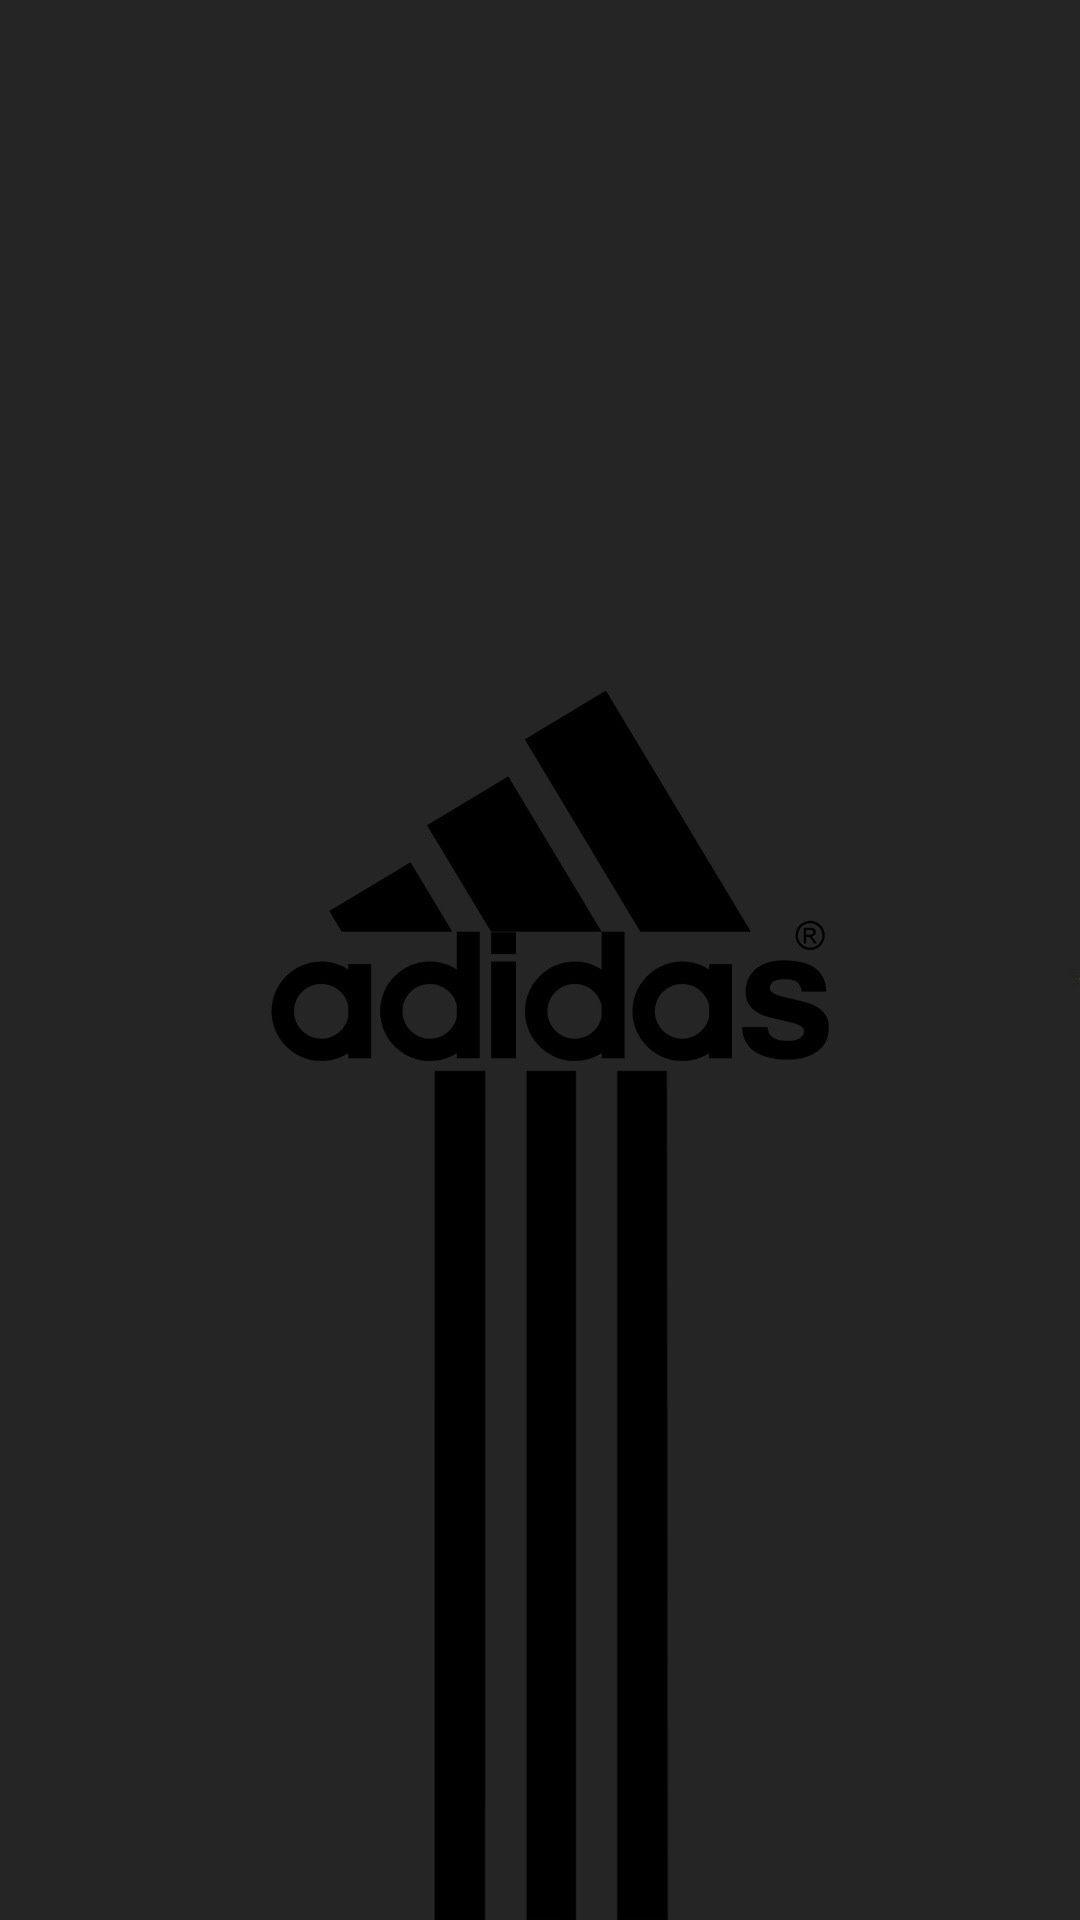 Adidas. Logo Design Inspiring. Nike wallpaper, iPhone